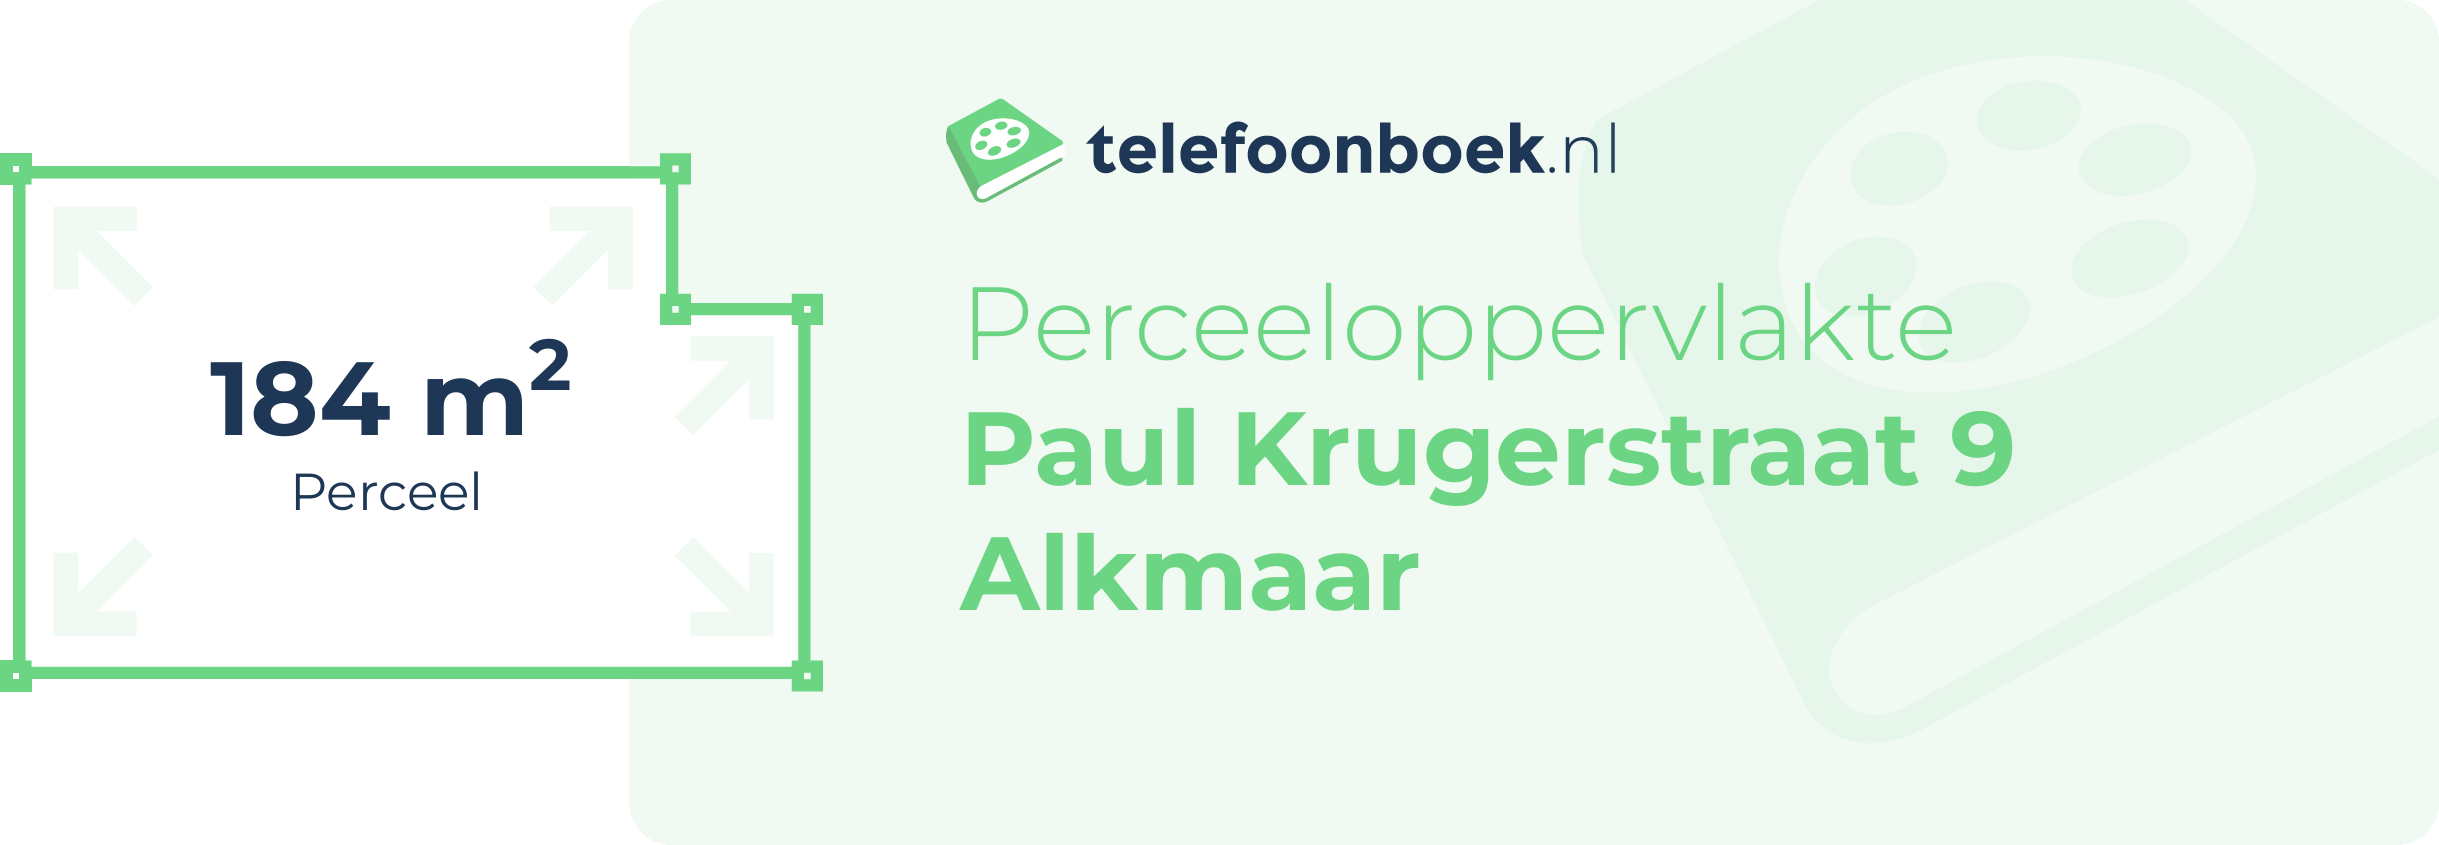 Perceeloppervlakte Paul Krugerstraat 9 Alkmaar